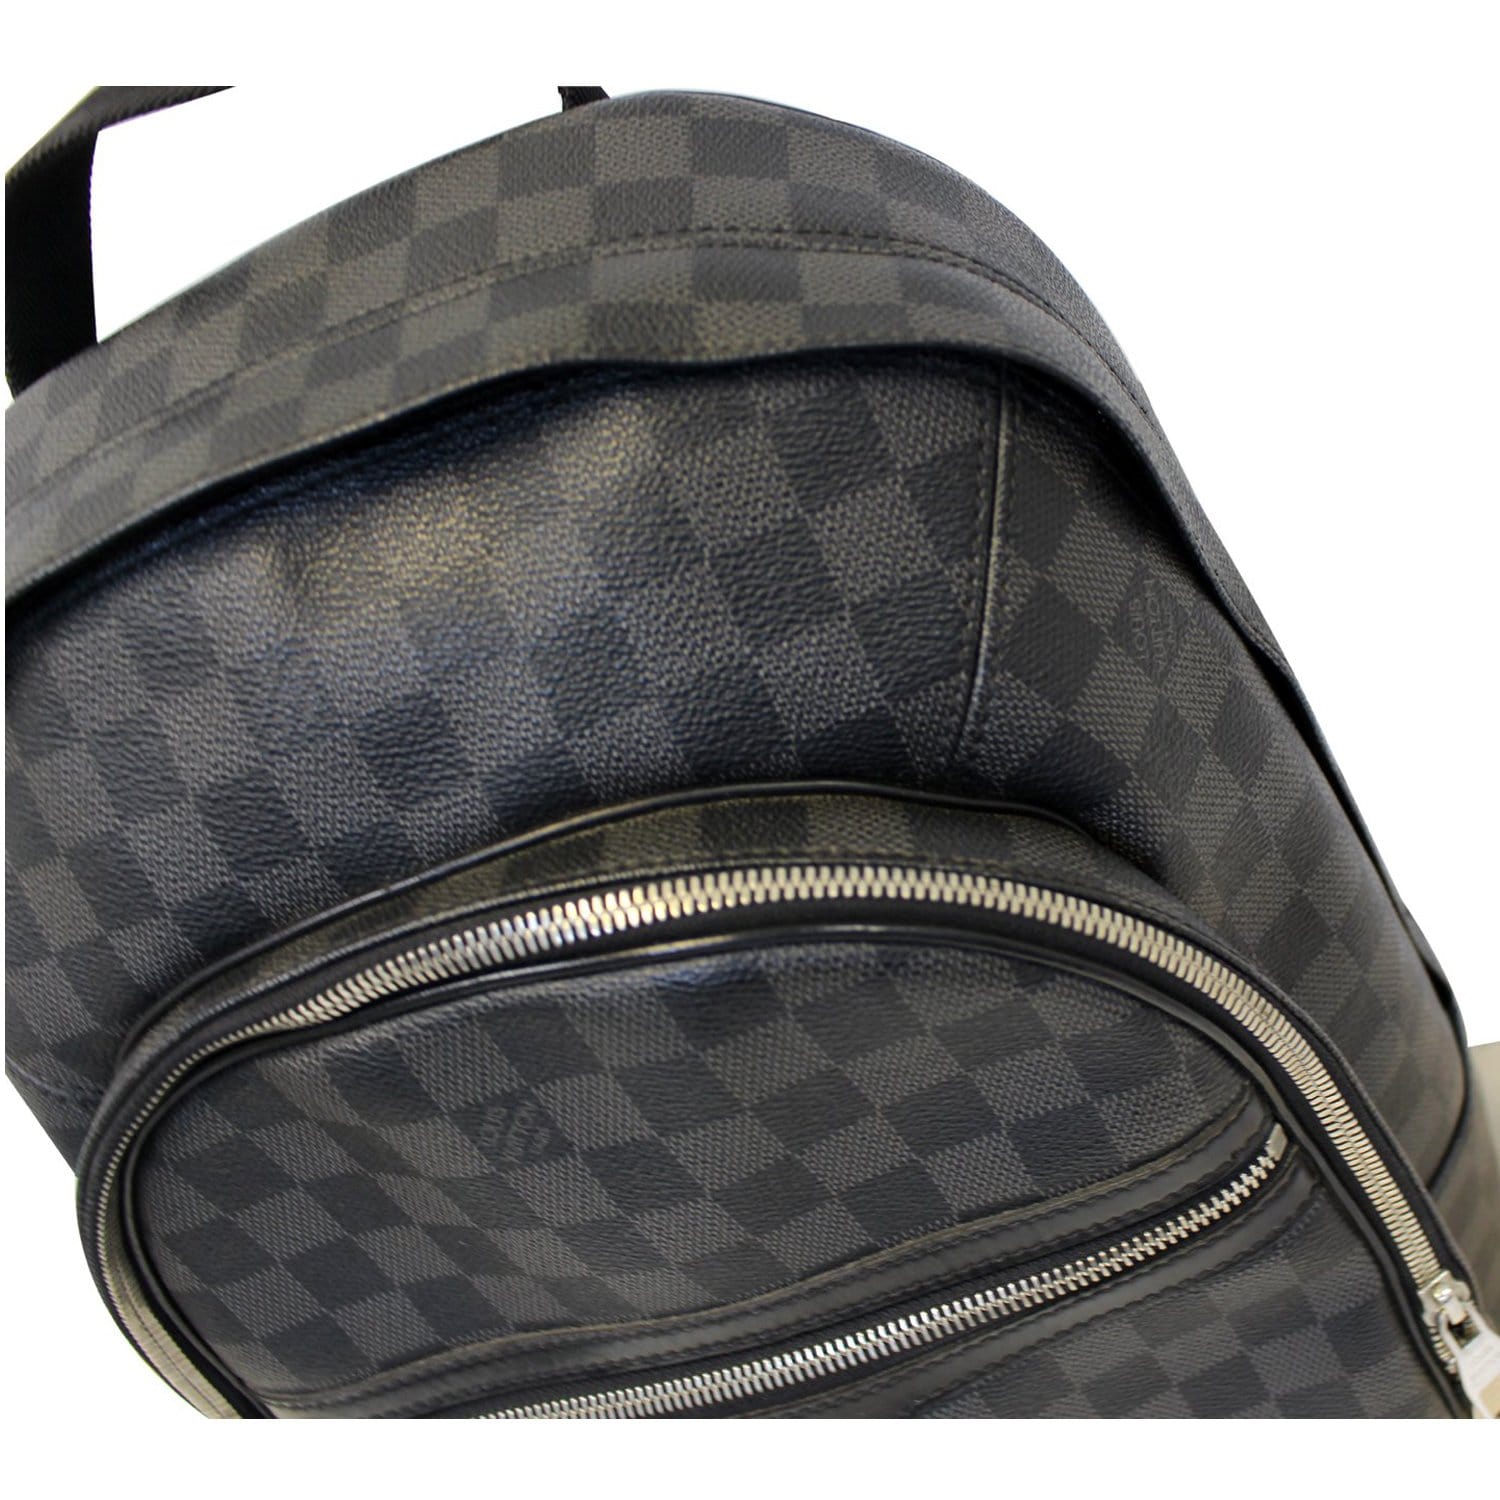 Louis Vuitton Damier Graphite Canvas Michael Backpack Bag